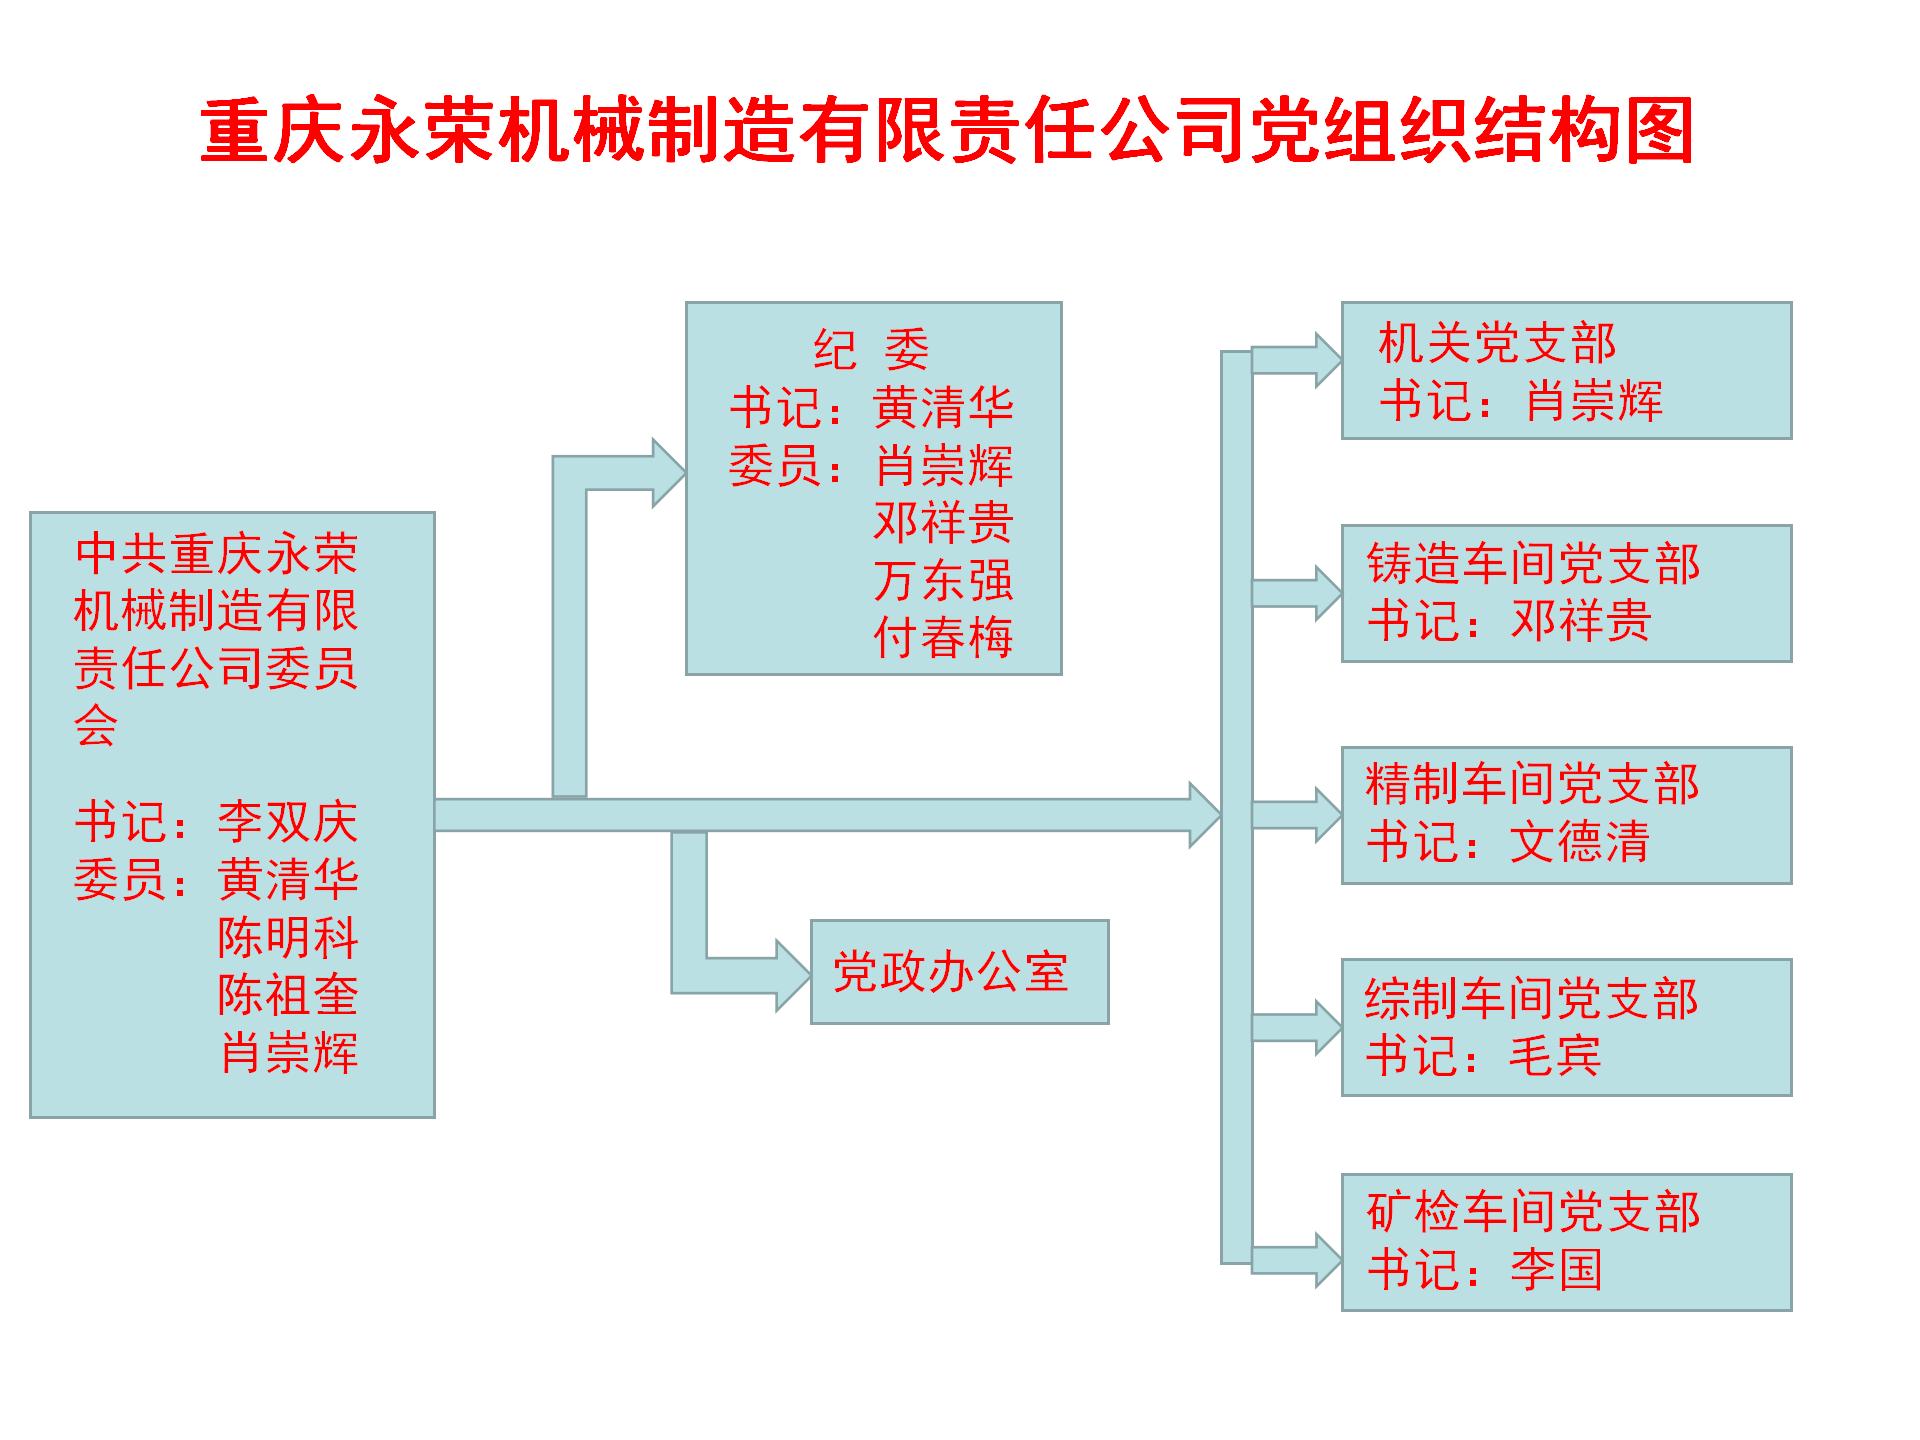 党组织结构图_03.jpg